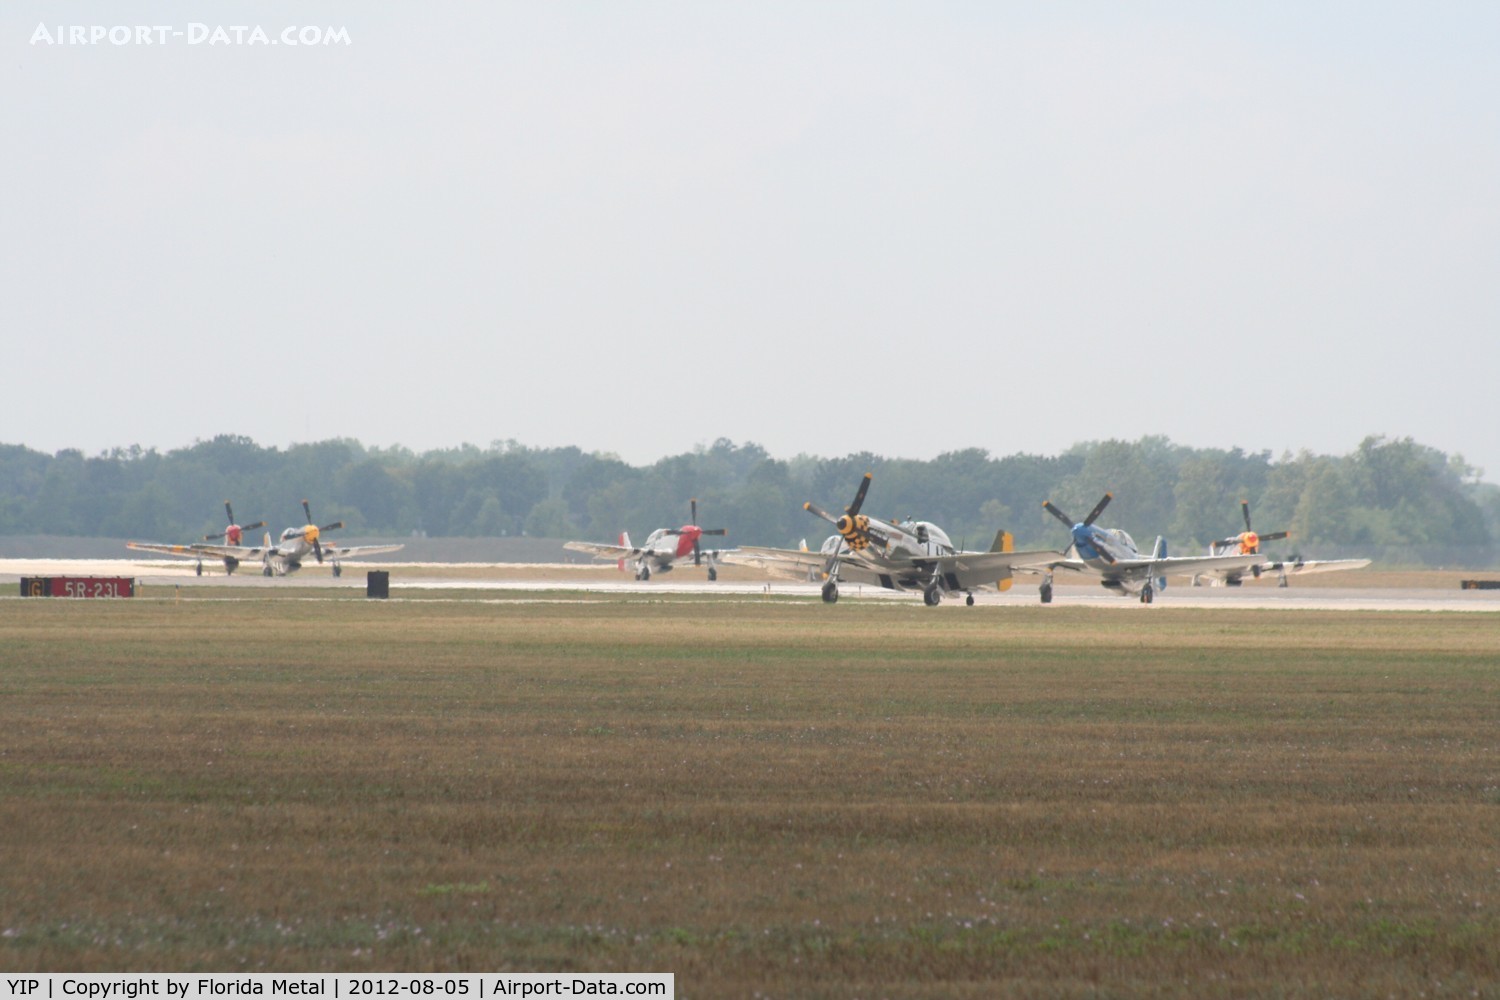 Willow Run Airport (YIP) - Mustangs returning